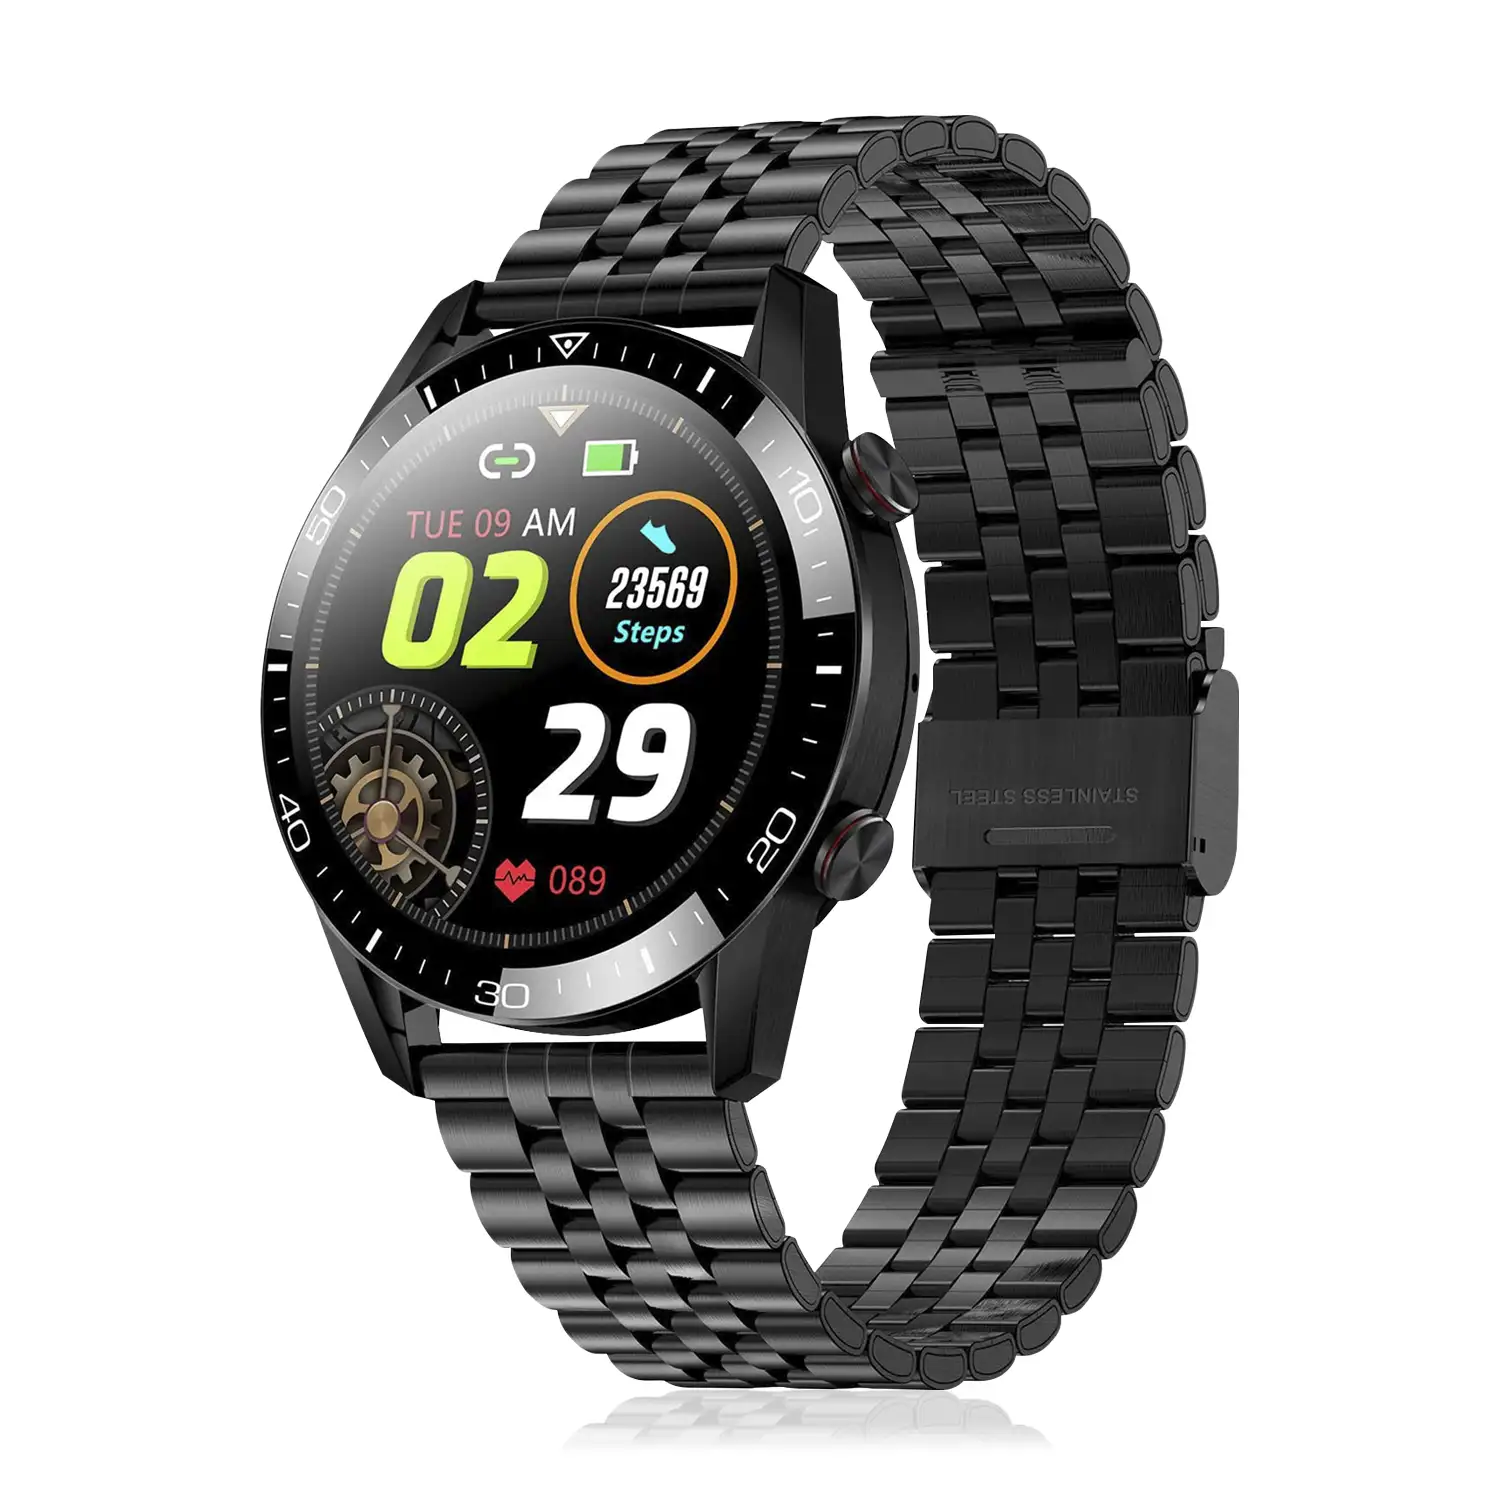 Smartwatch TK28 con correa metálica, monitor cardíaco, tensión y O2 en sangre. Varios modos deportivos.